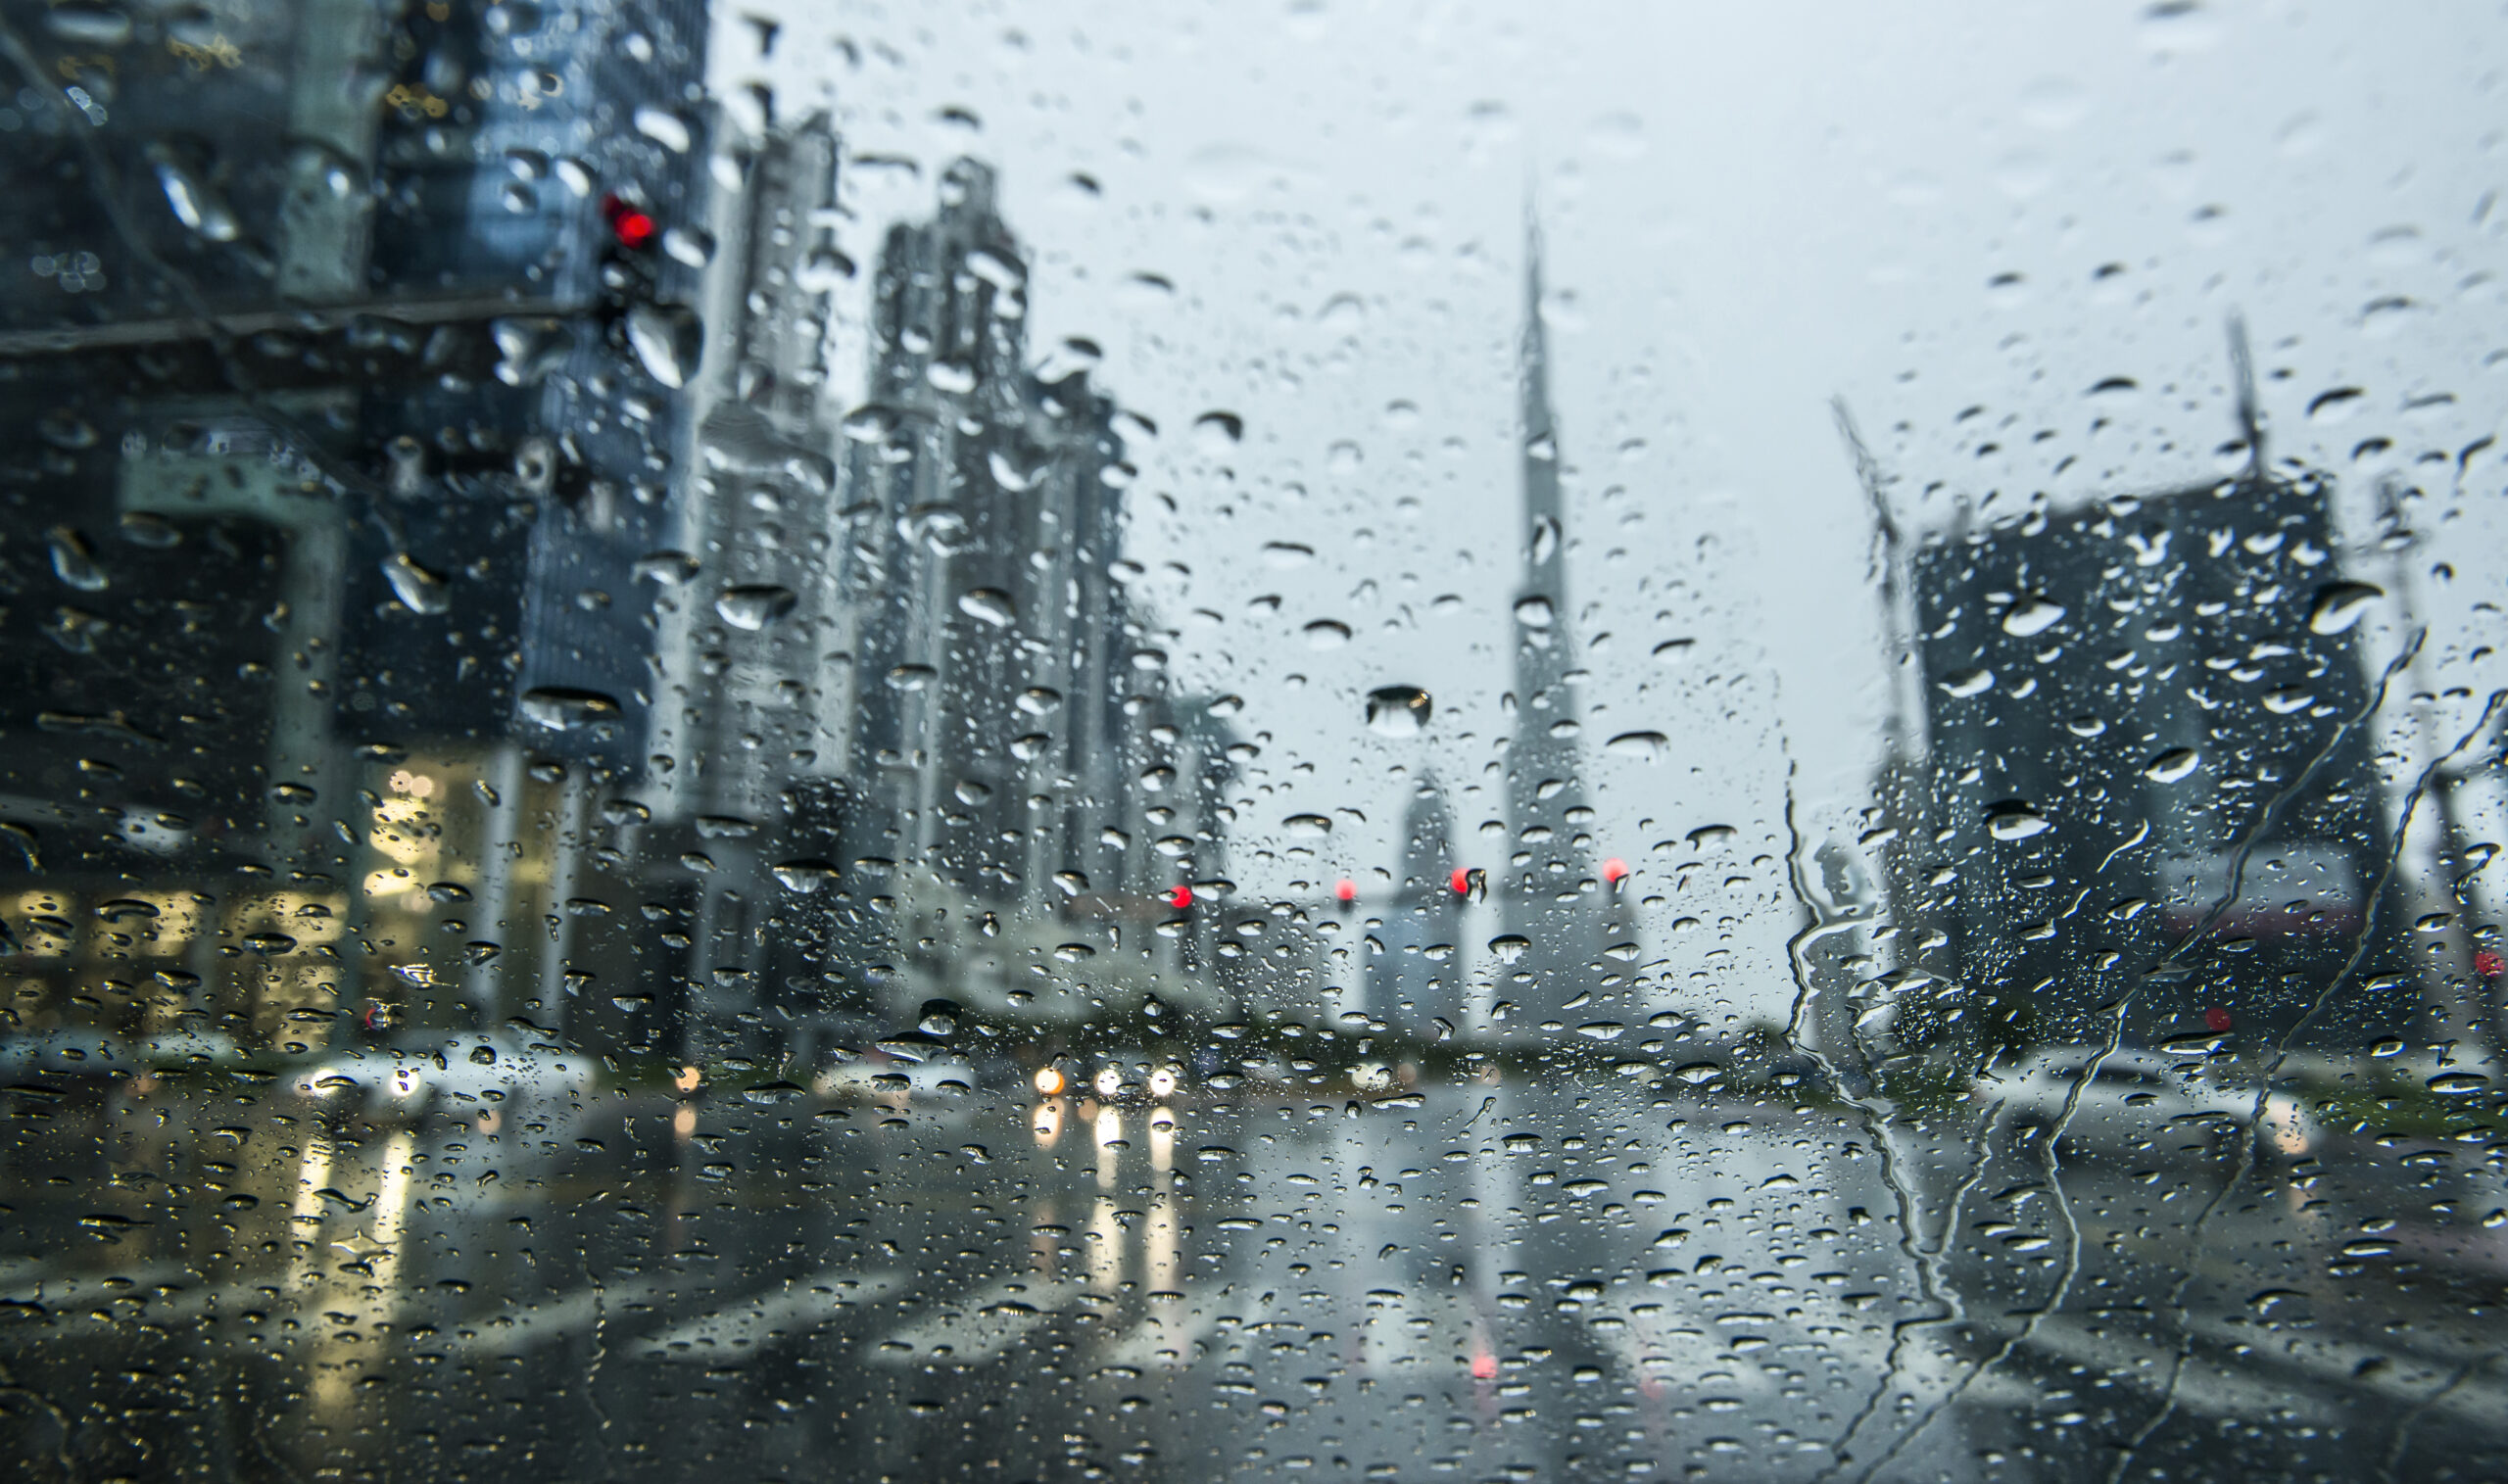 Dubai weather and climate - Rain in Dubai